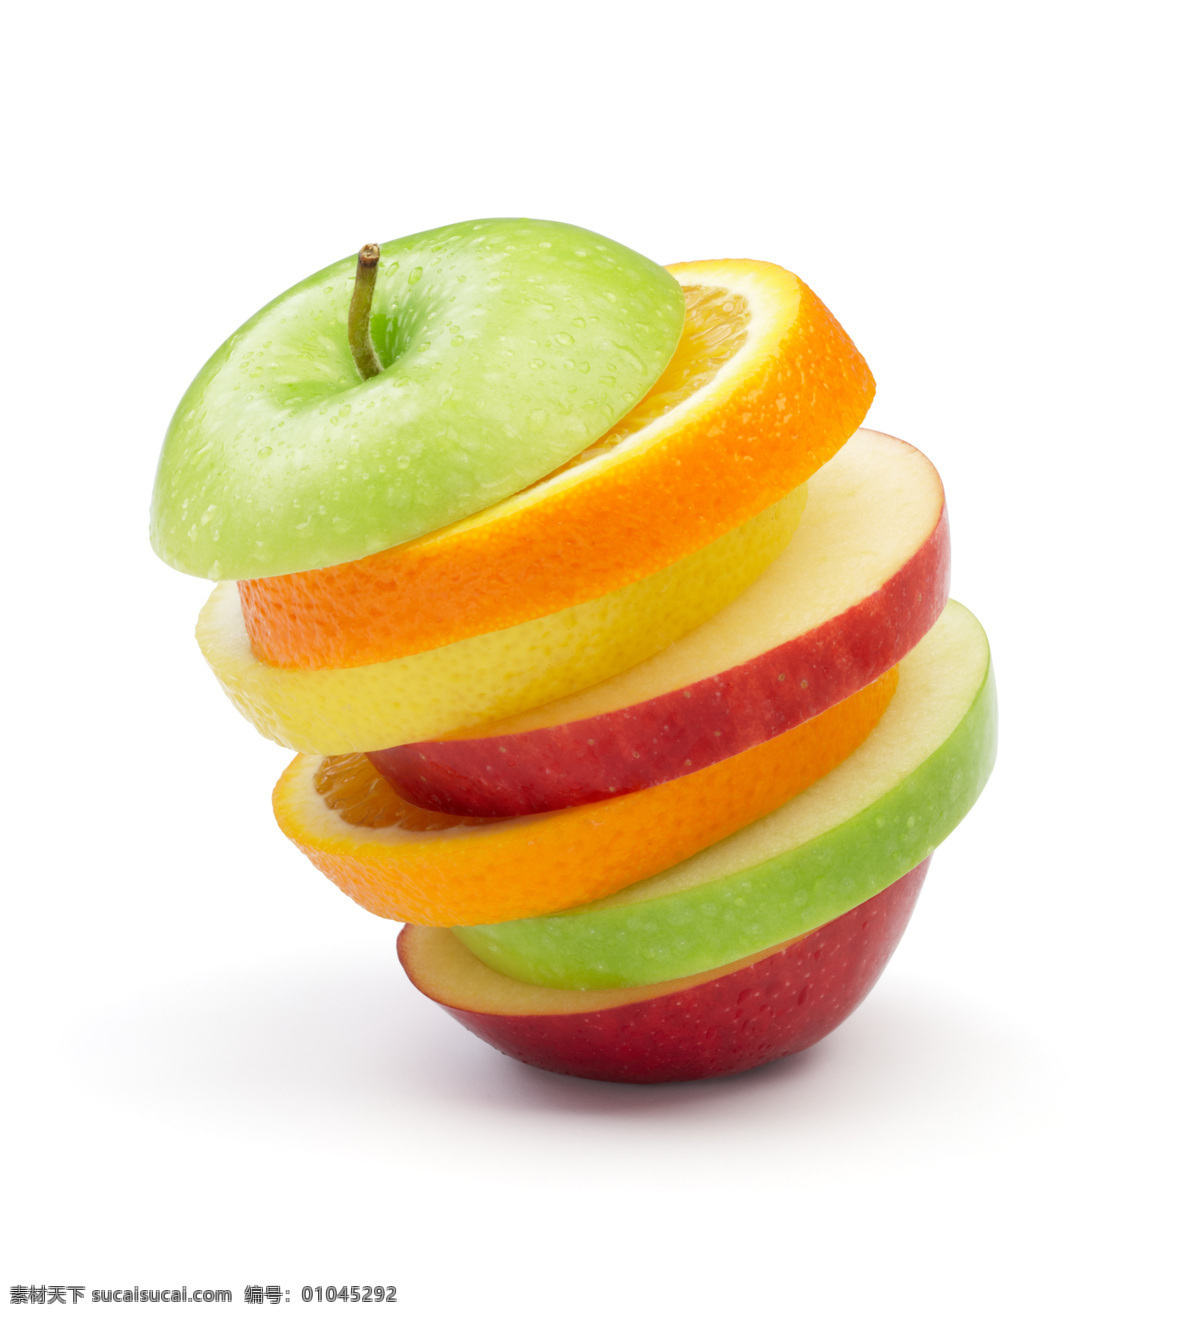 摞 倾斜 切开 水果 一摞 橙子 苹果 水果图片 餐饮美食